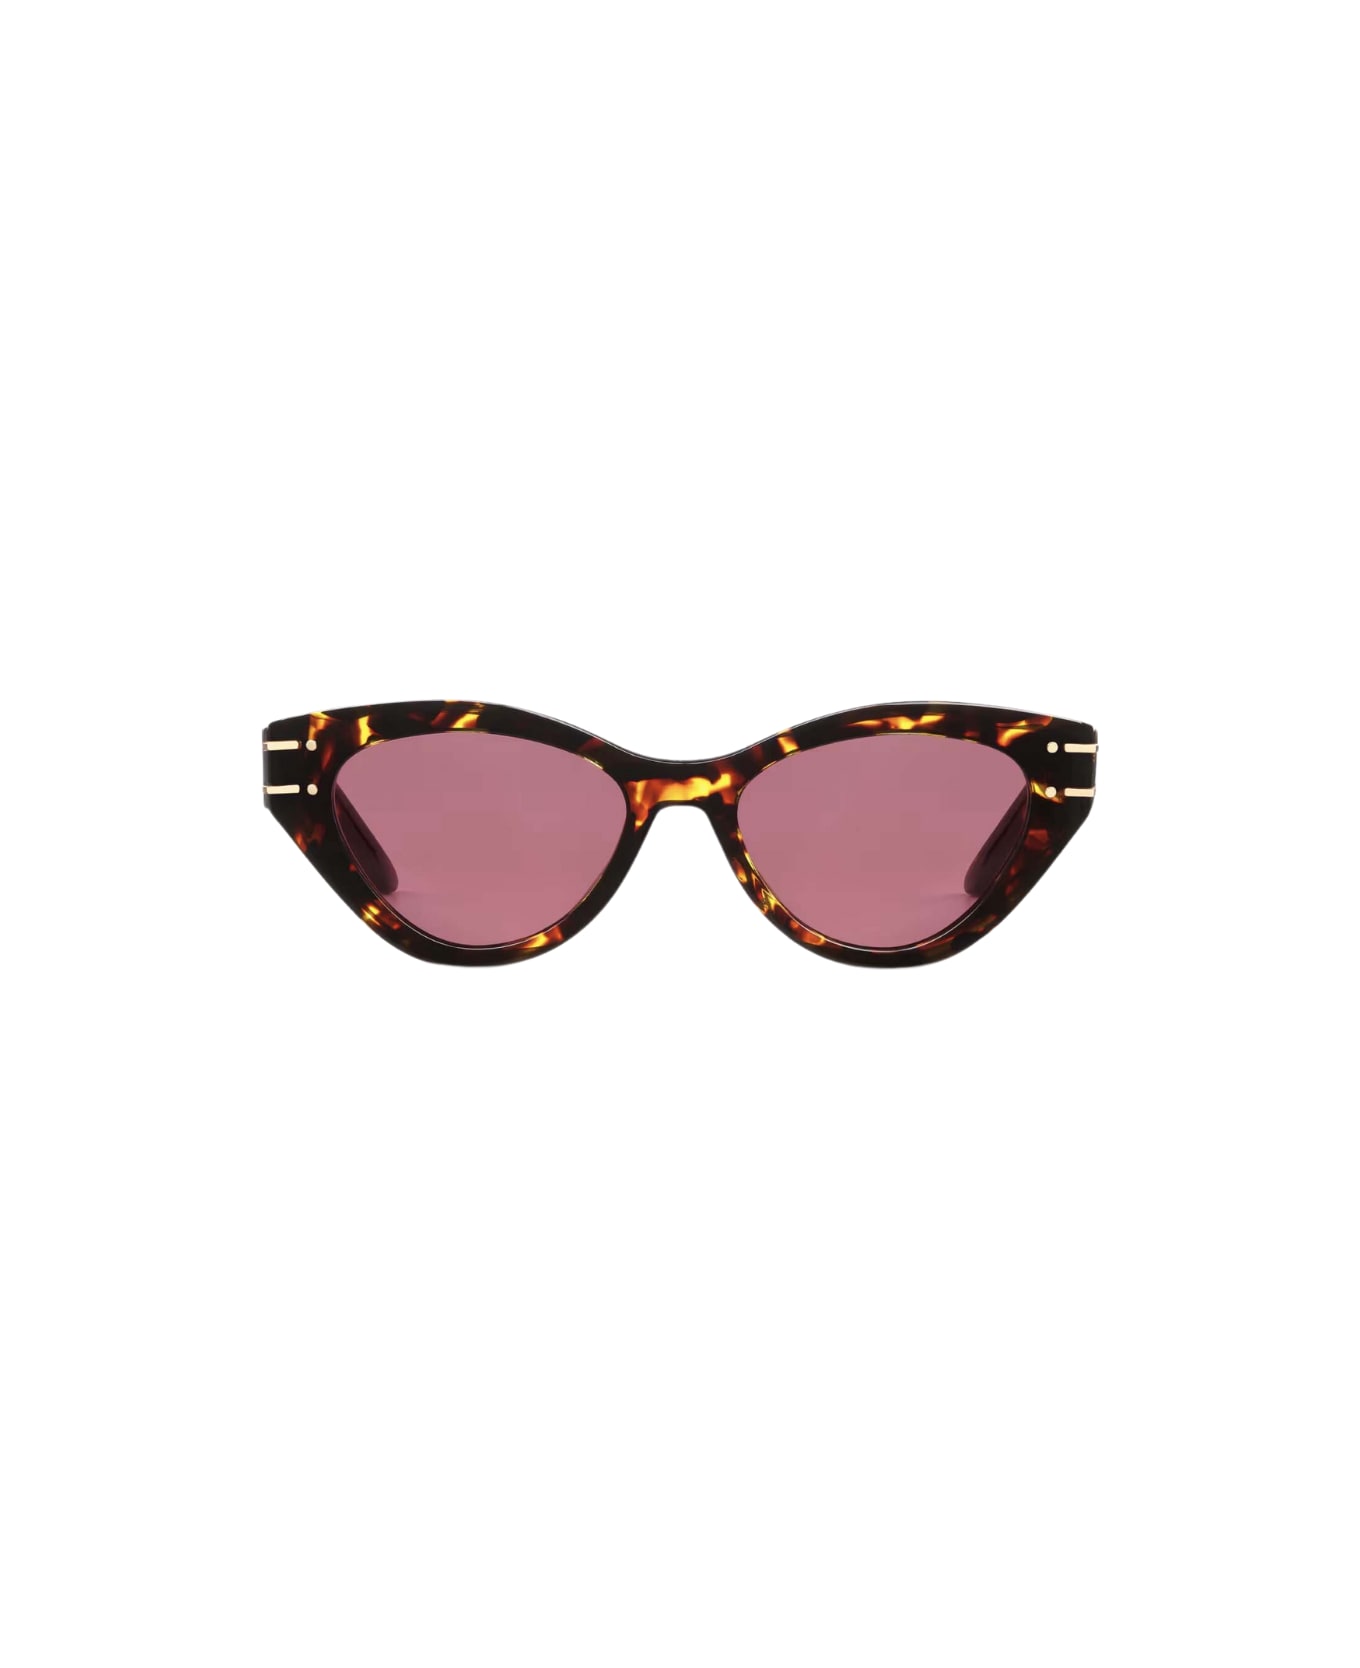 Dior Eyewear Sunglasses - Havana/Rosa サングラス